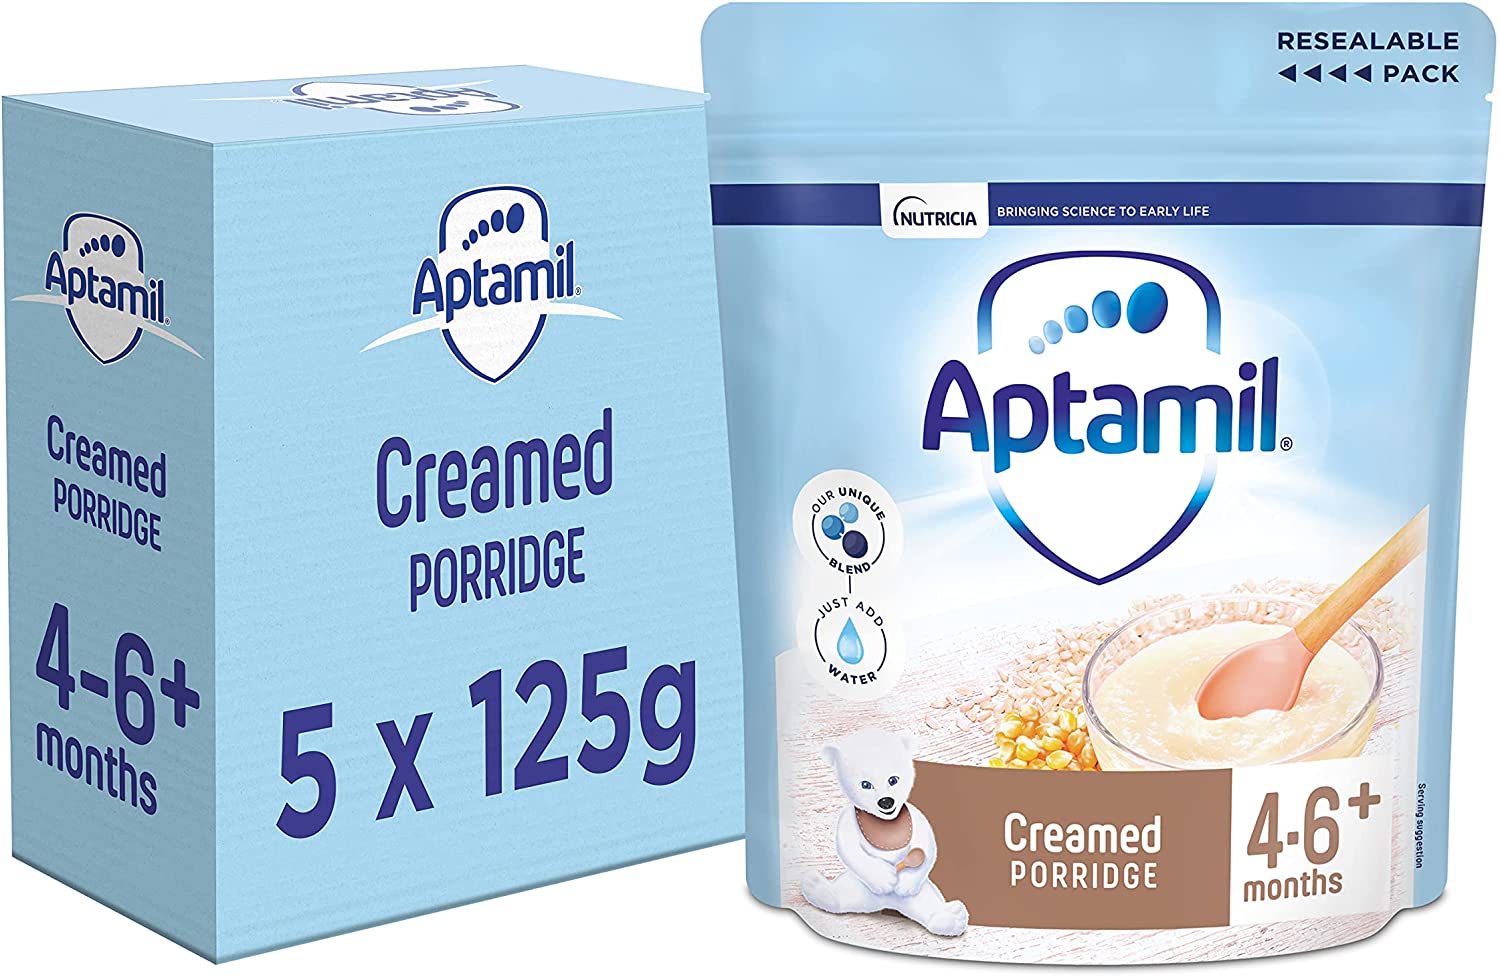 (IP) 96324 Aptamil Creamy Porridge Cereal 125g, 4-6m+, Case of 5